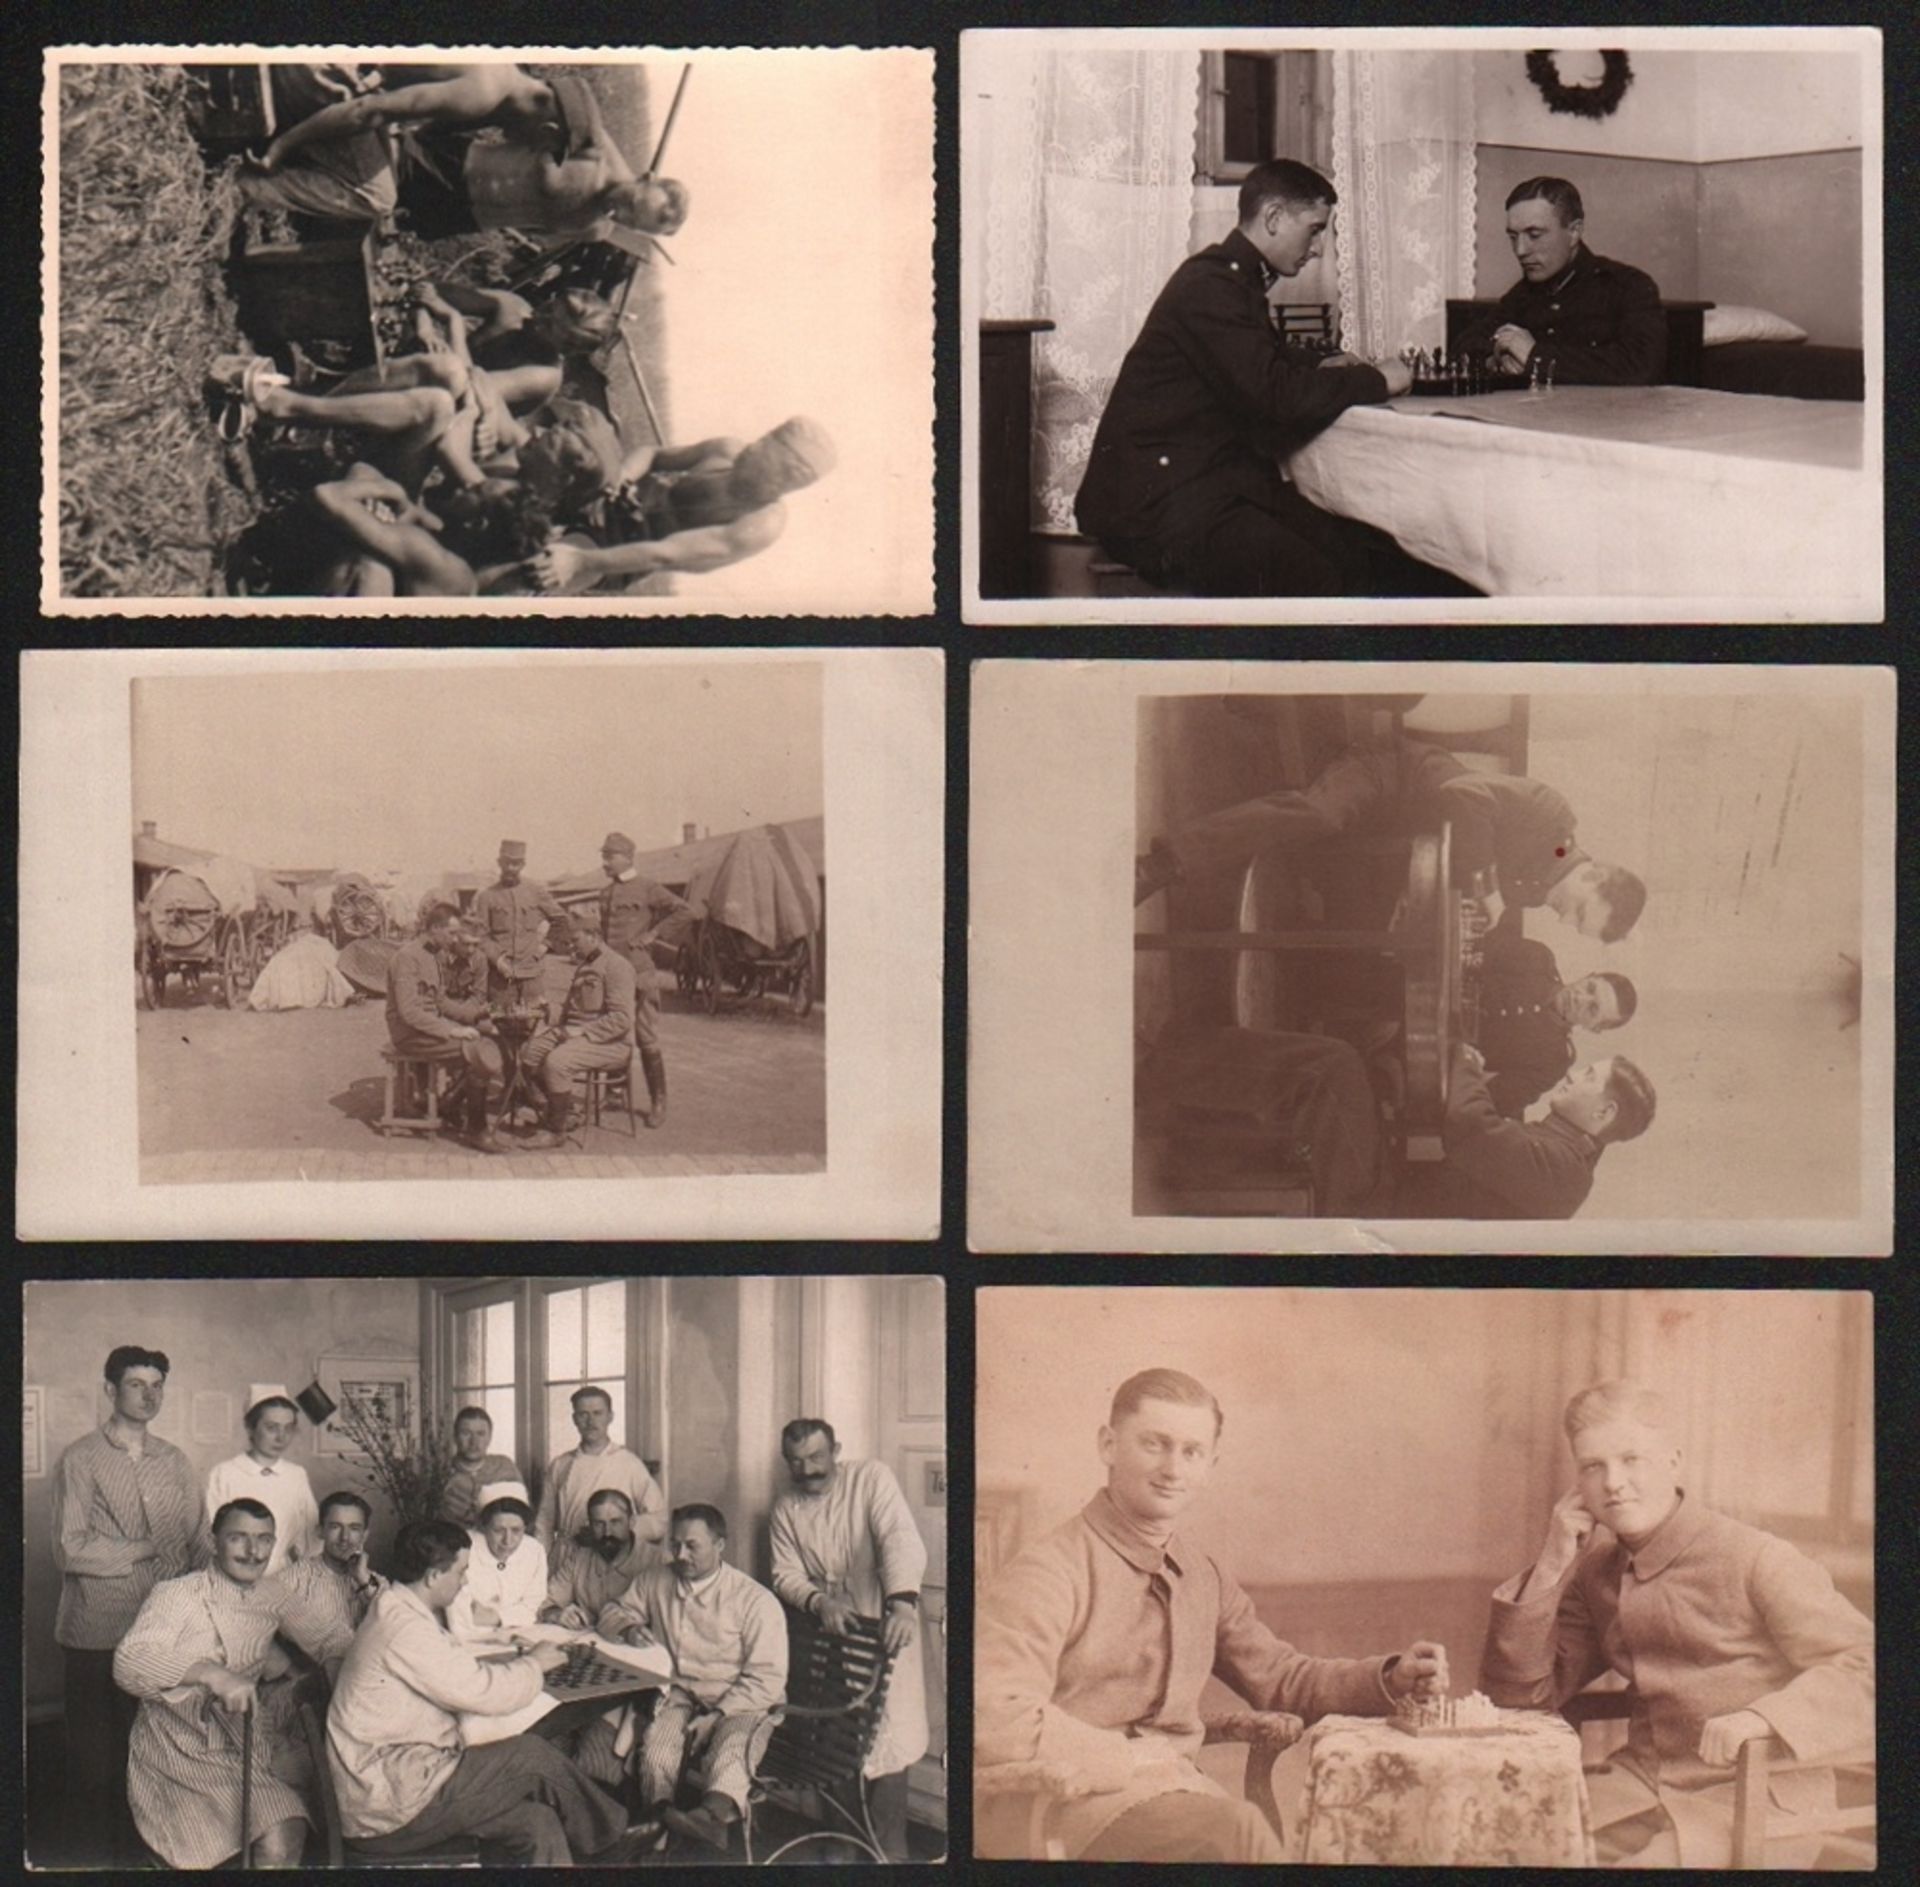 Postkarte. Soldaten beim Schachspiel. 6 schwarzweiße und teilweise postalisch gelaufene Postkarten